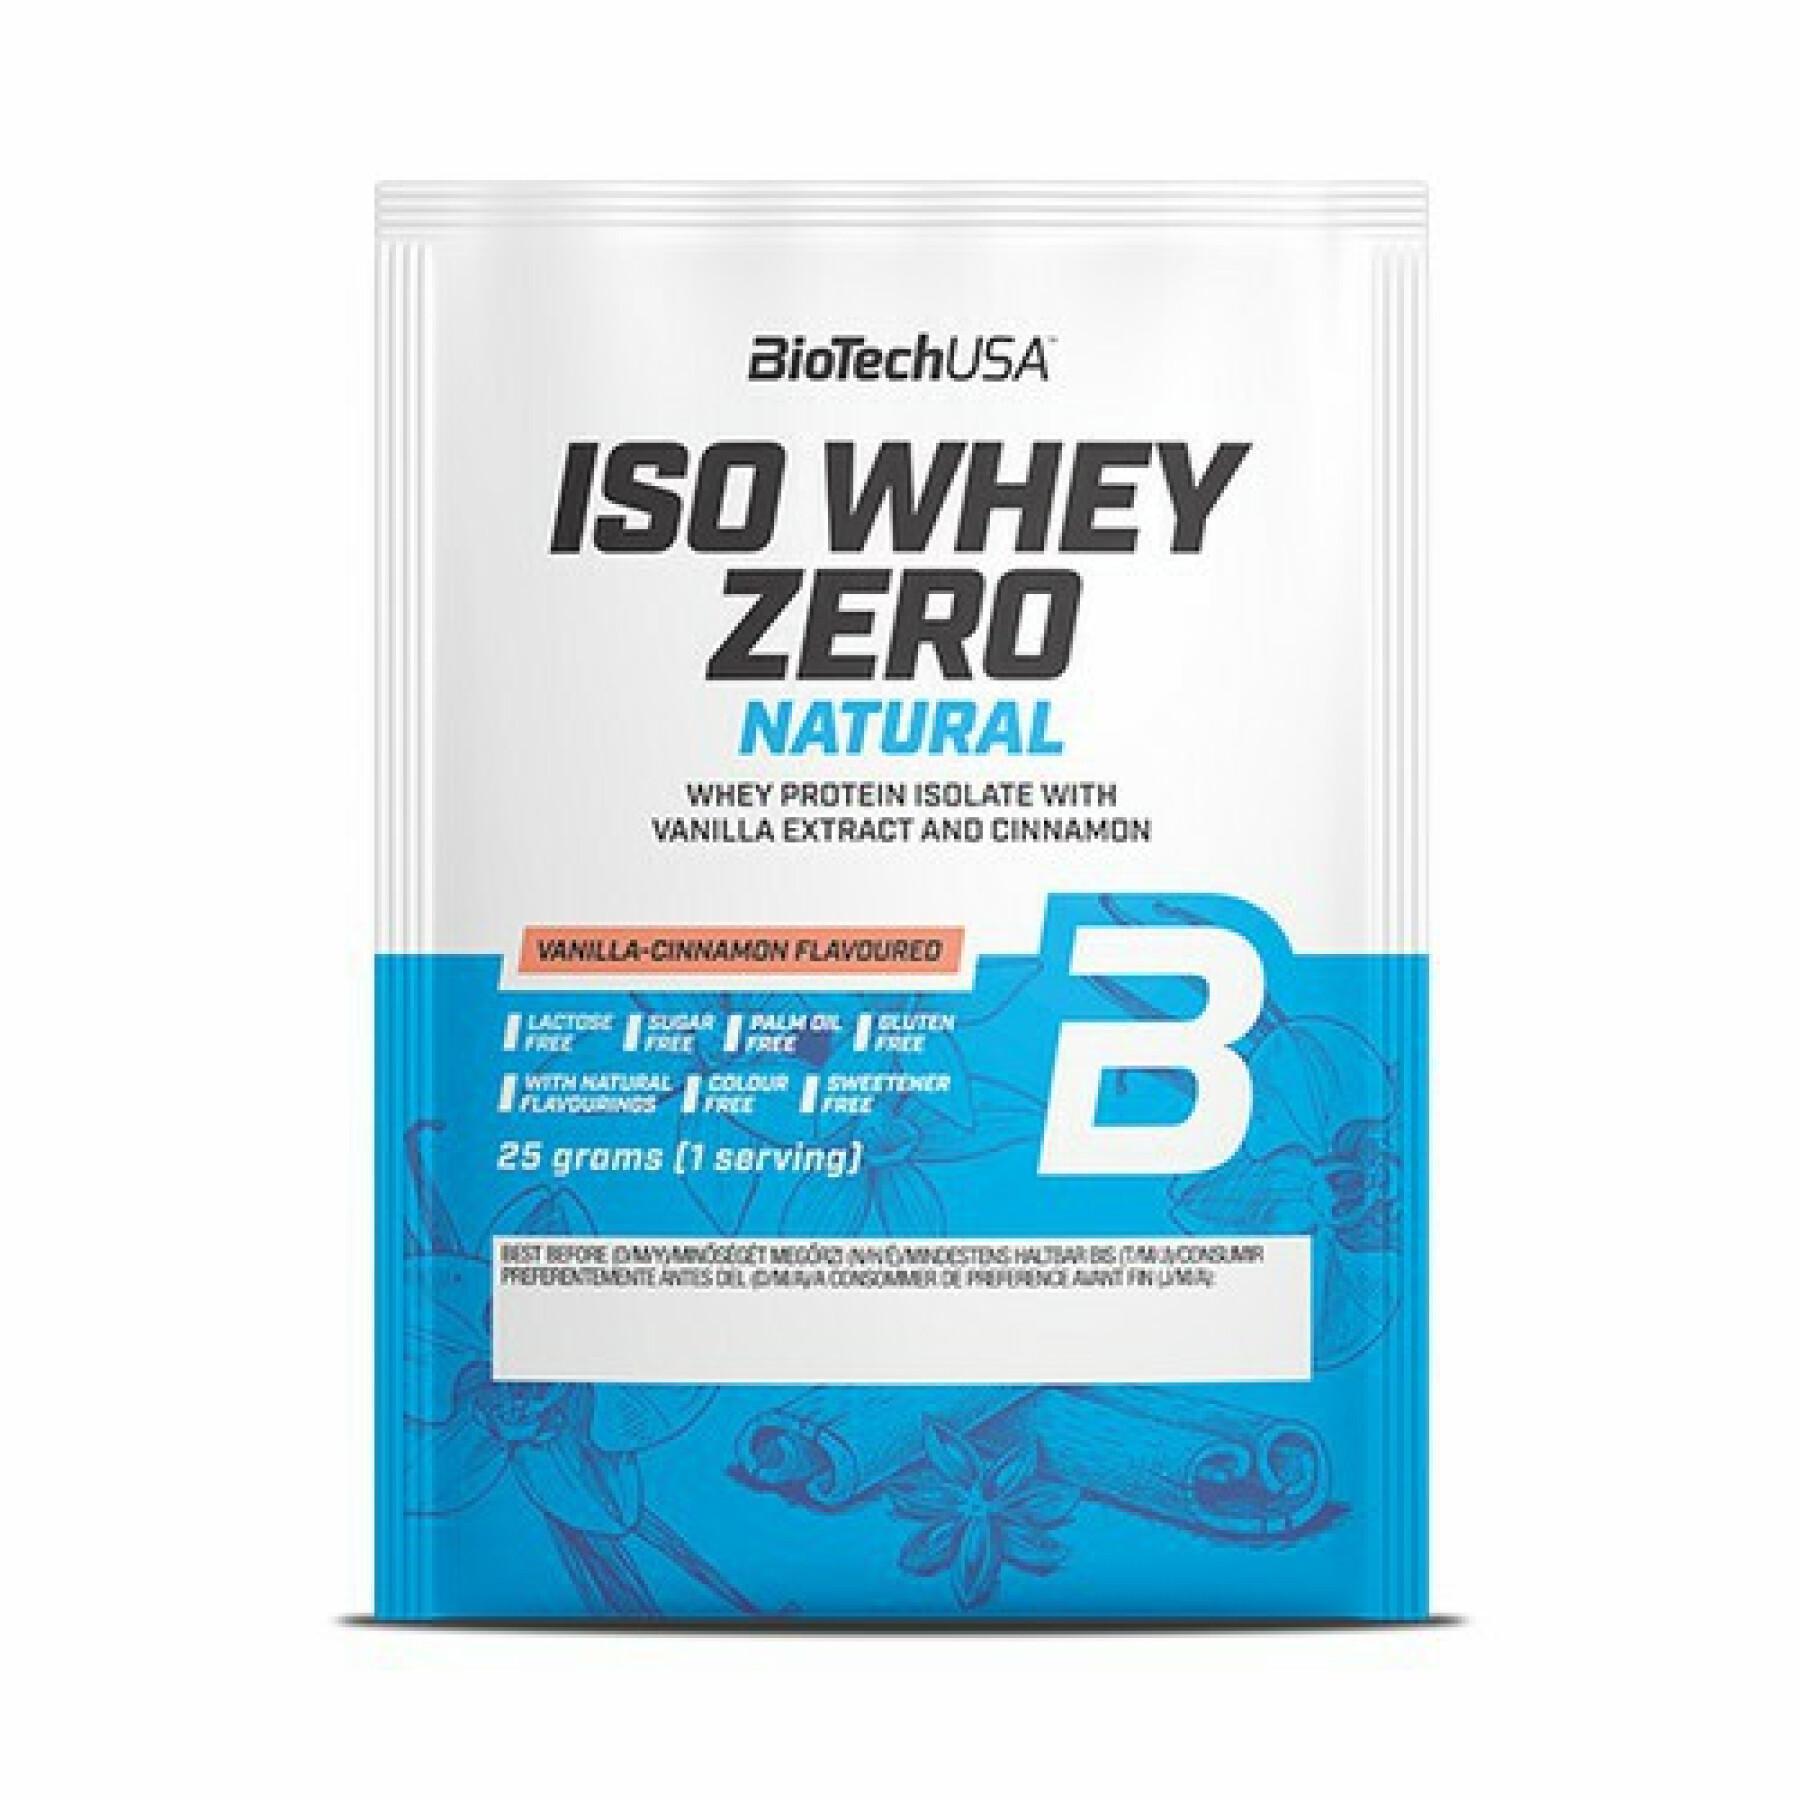 50 pacchetti di proteine senza lattosio Biotech USA iso whey zero - Vaniglia -cannella - 25g